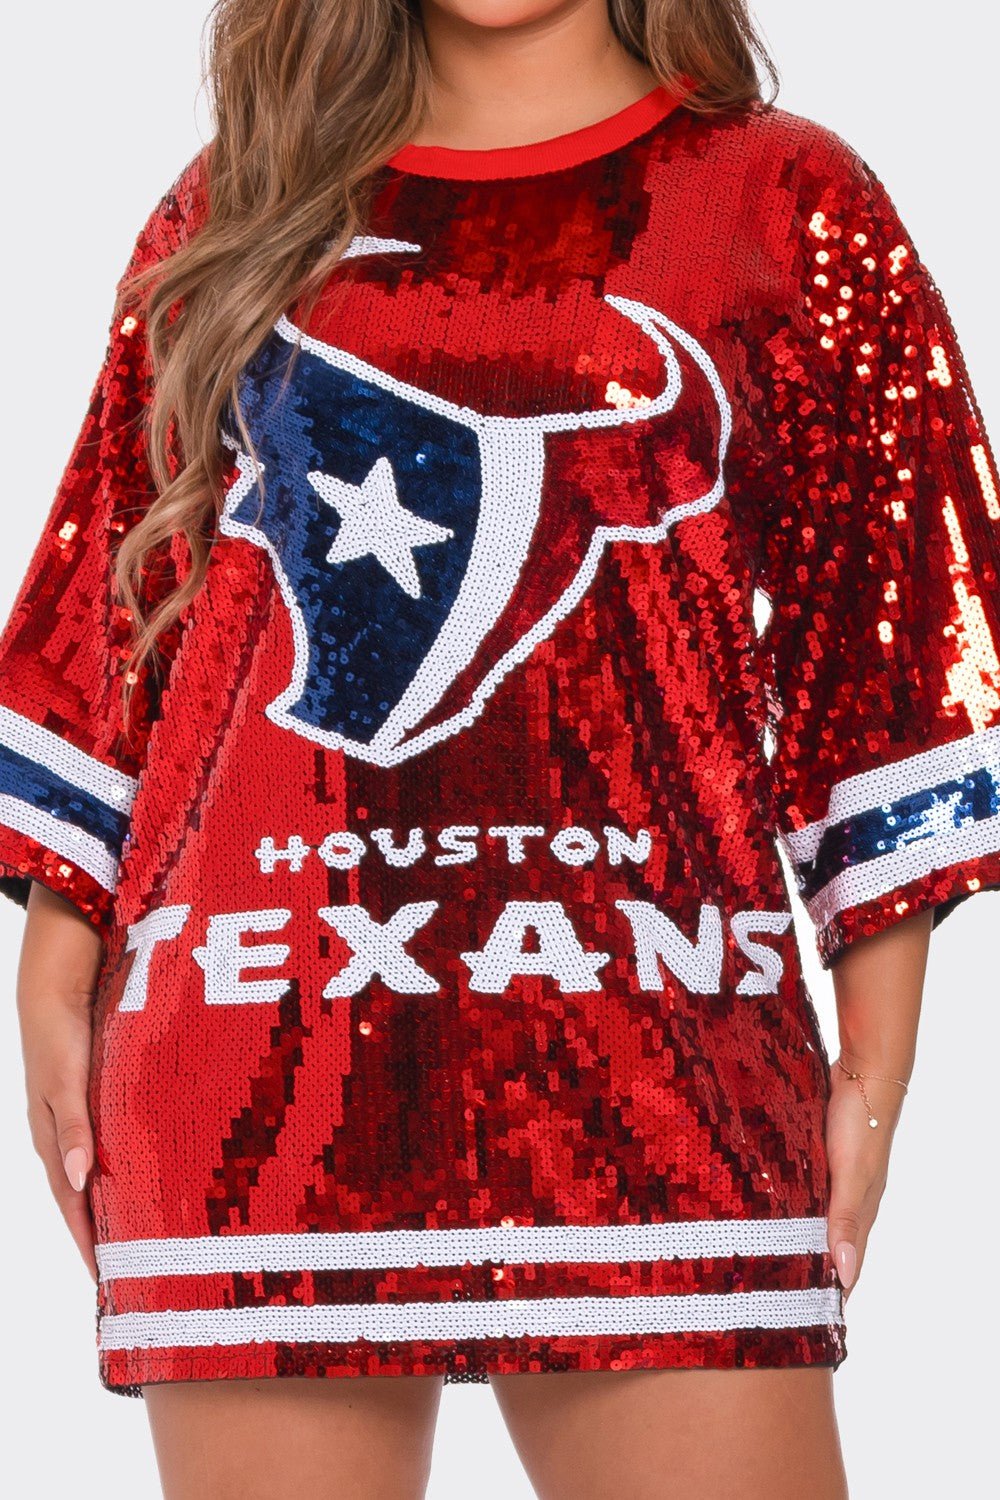 Houston Texans Sequins Dress/Top - SASHAY COUTURE BOUTIQUE Dresses